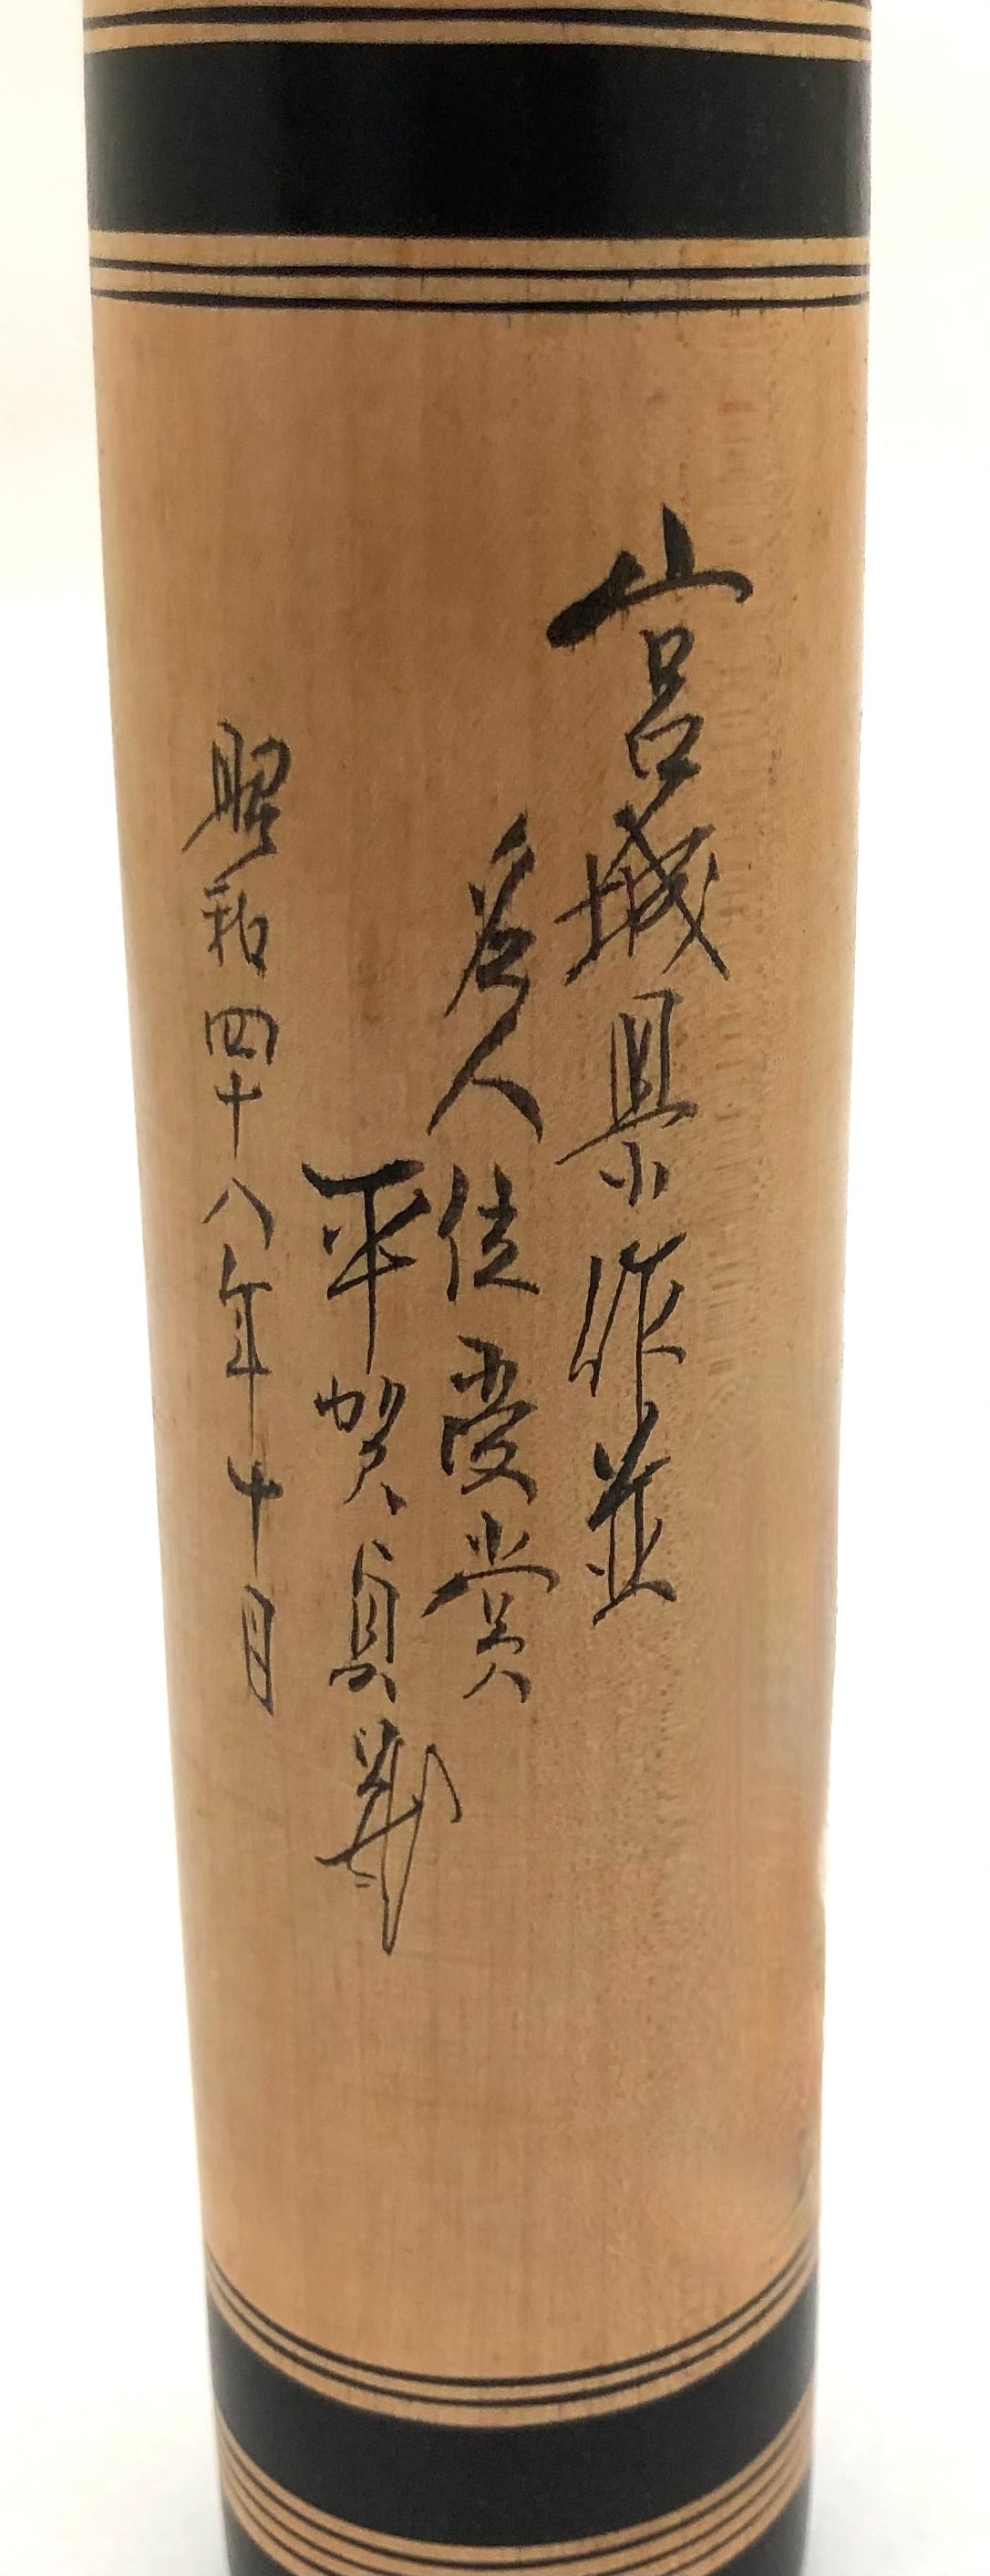 Antique Traditional Sakanumi Kokeshi by Hiraga, Kenjiro (Master)